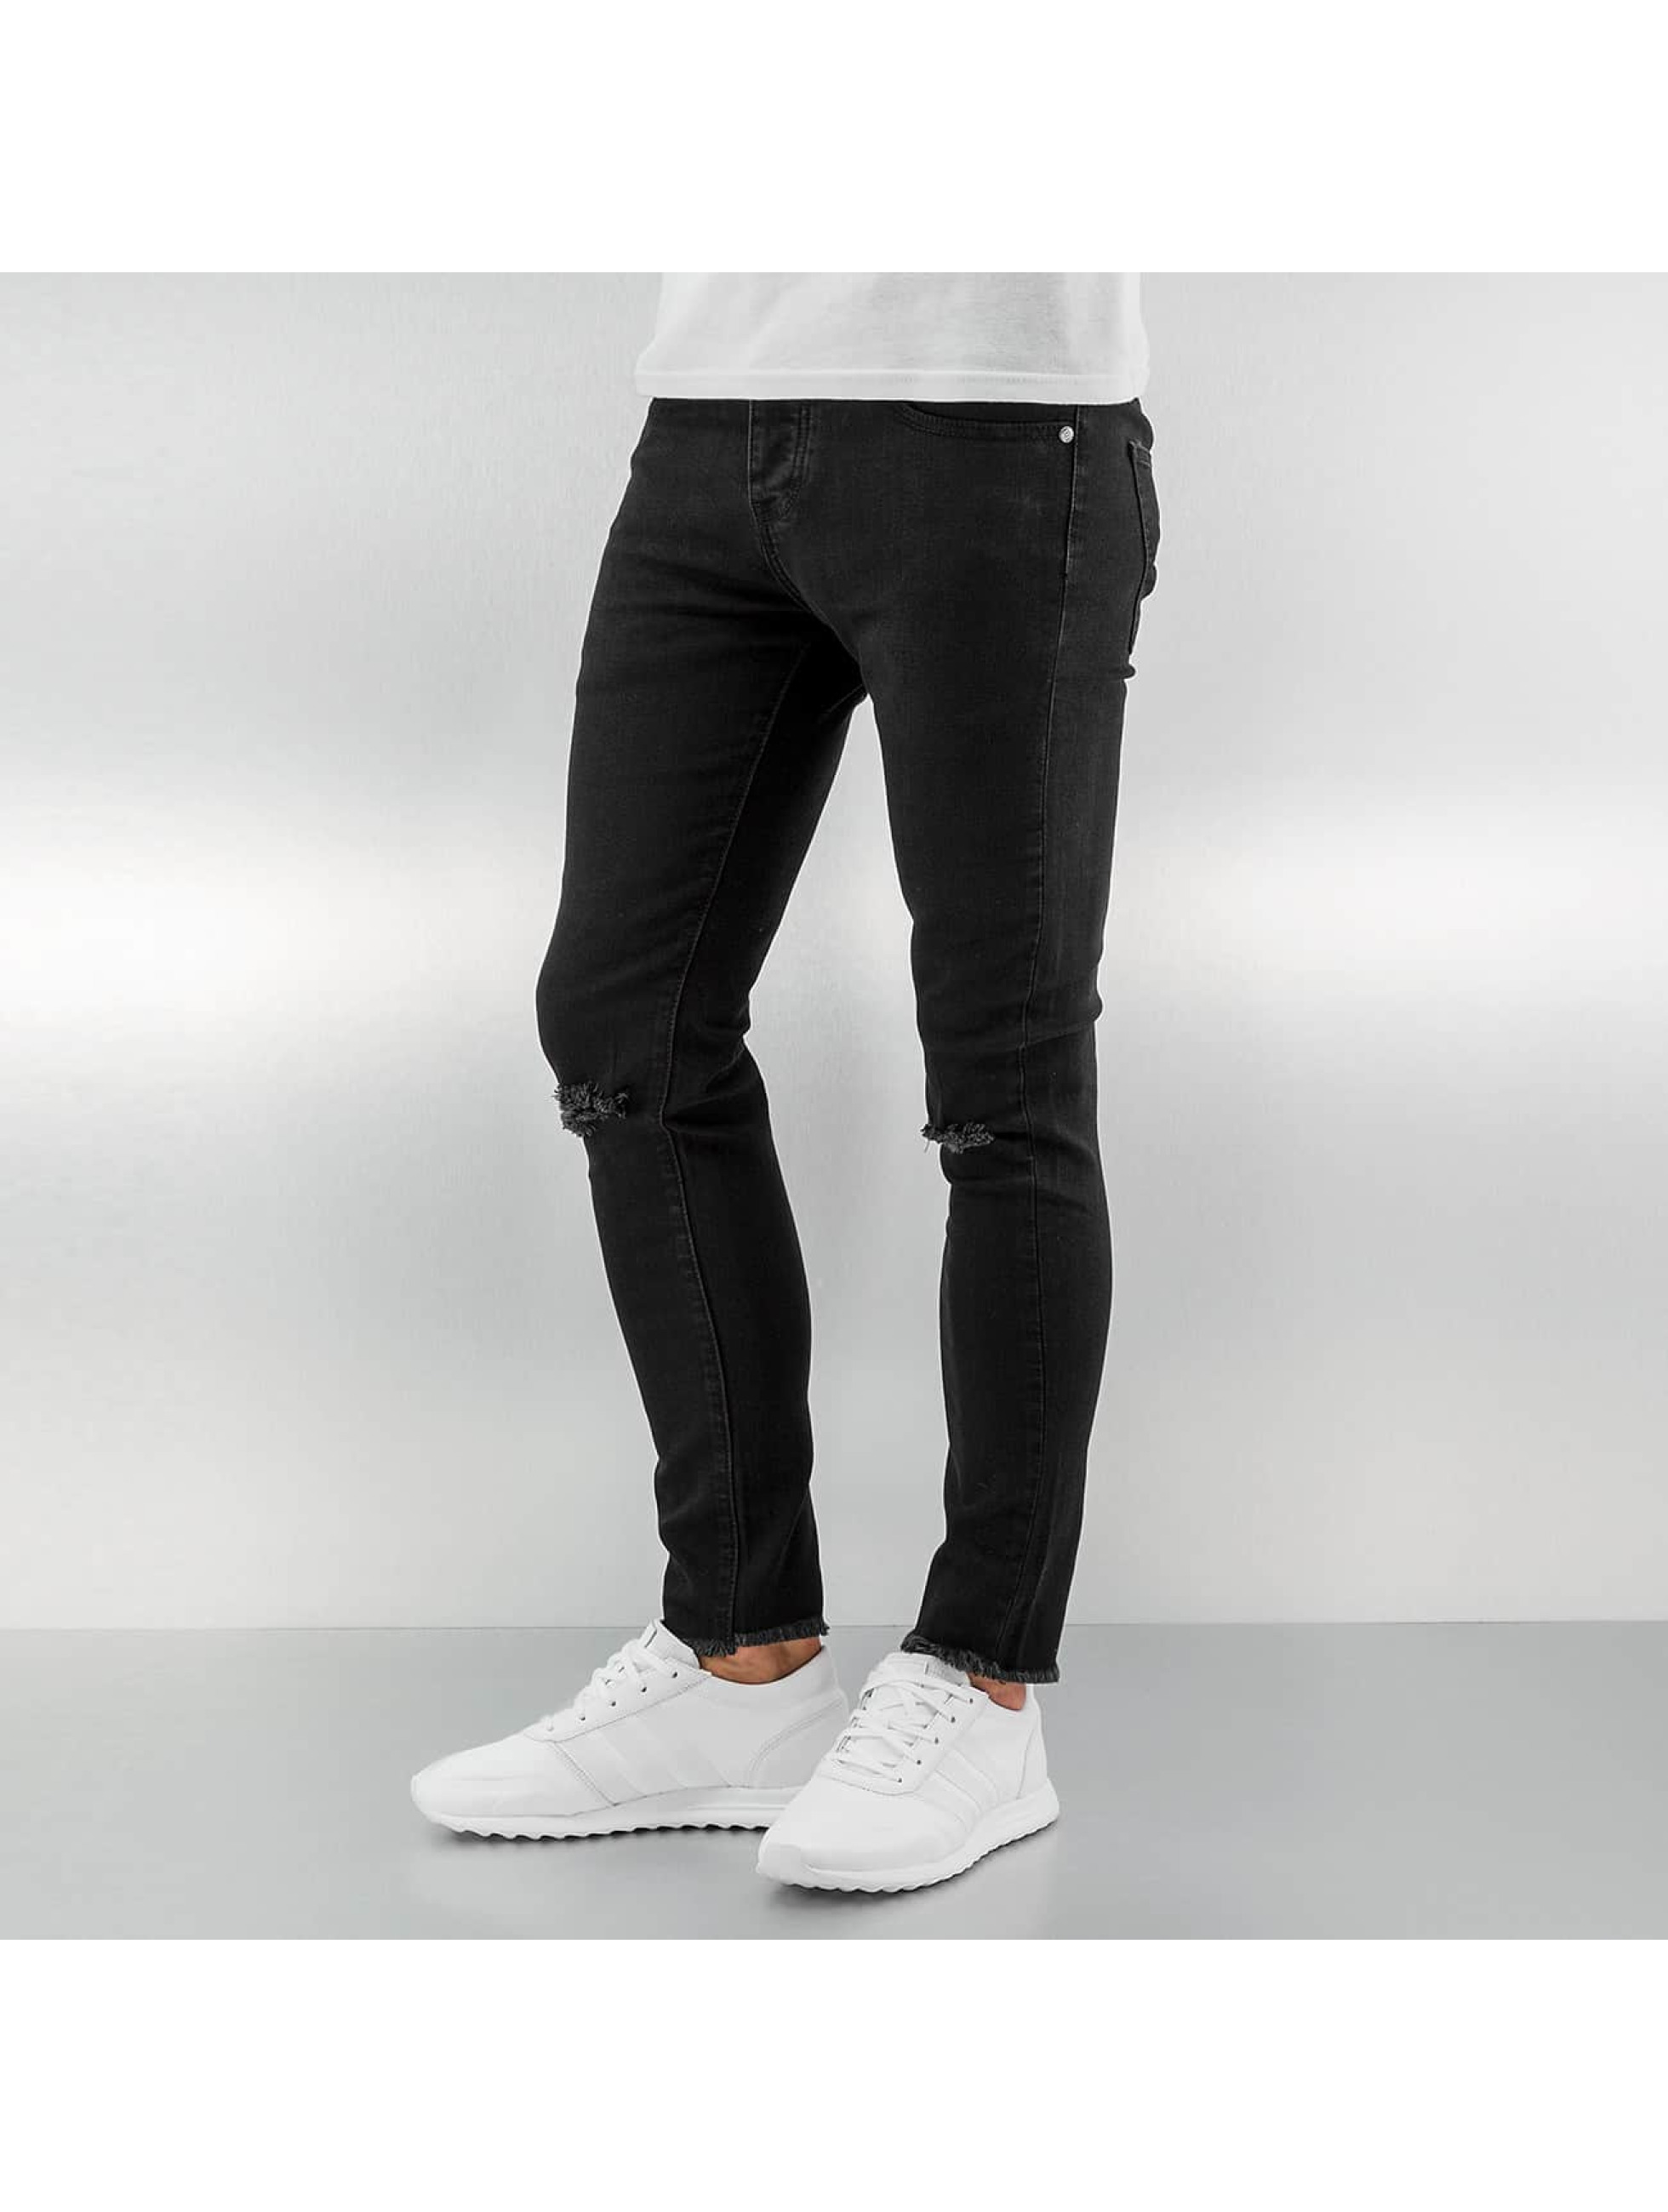 Skinny Jeans Knee Cut in schwarz